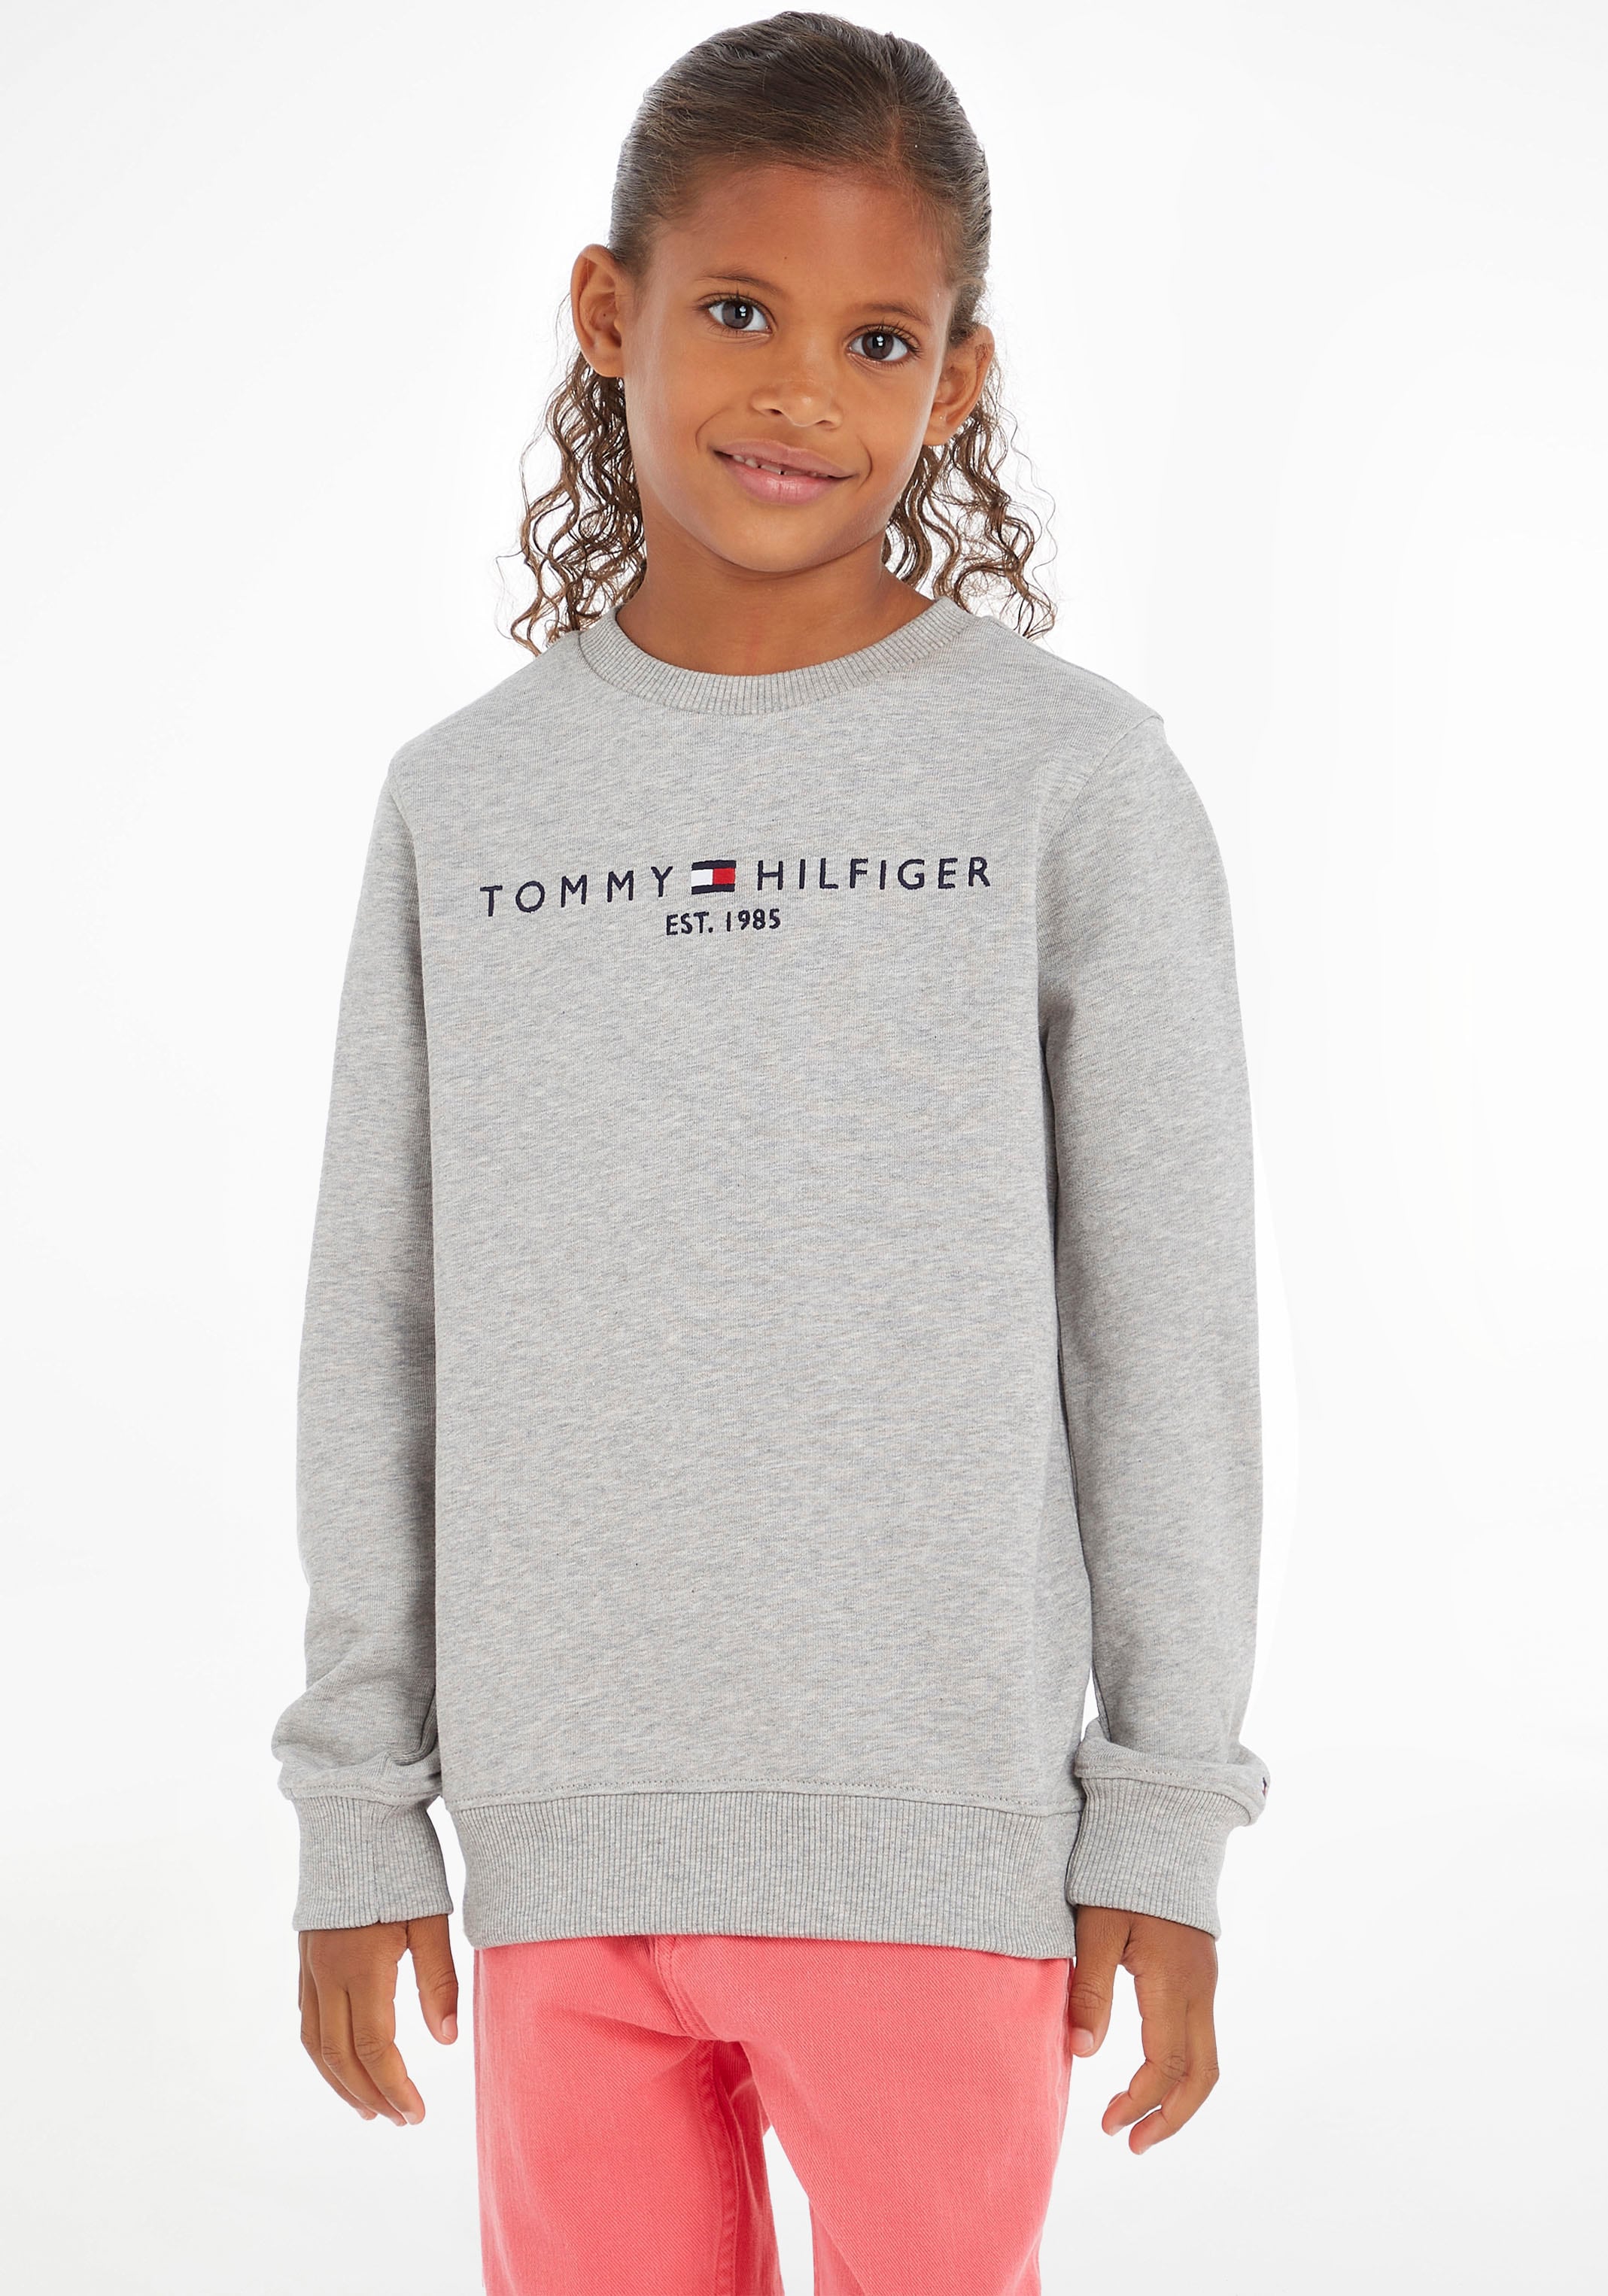 Tommy Hilfiger Sweatshirt OTTO »ESSENTIAL Junior Kinder Mädchen MiniMe,für Jungen Kids SWEATSHIRT«, bei und